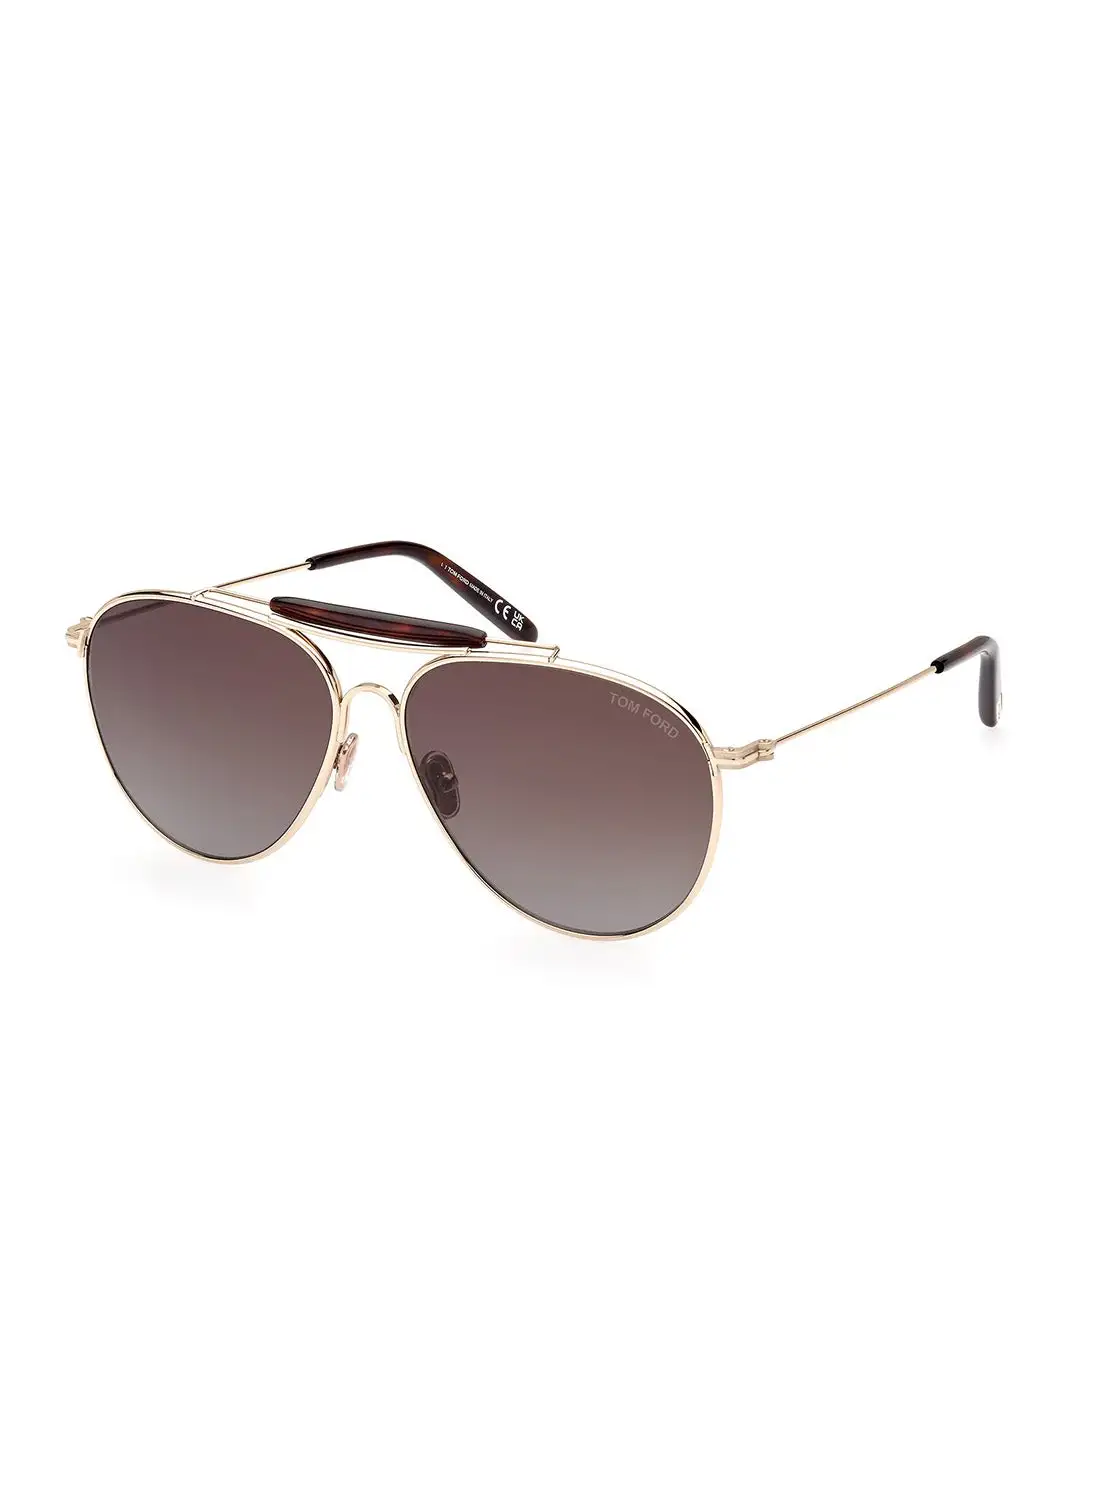 TOM FORD Men's UV Protection Pilot Sunglasses - FT099532F59 - Lens Size: 59 Mm